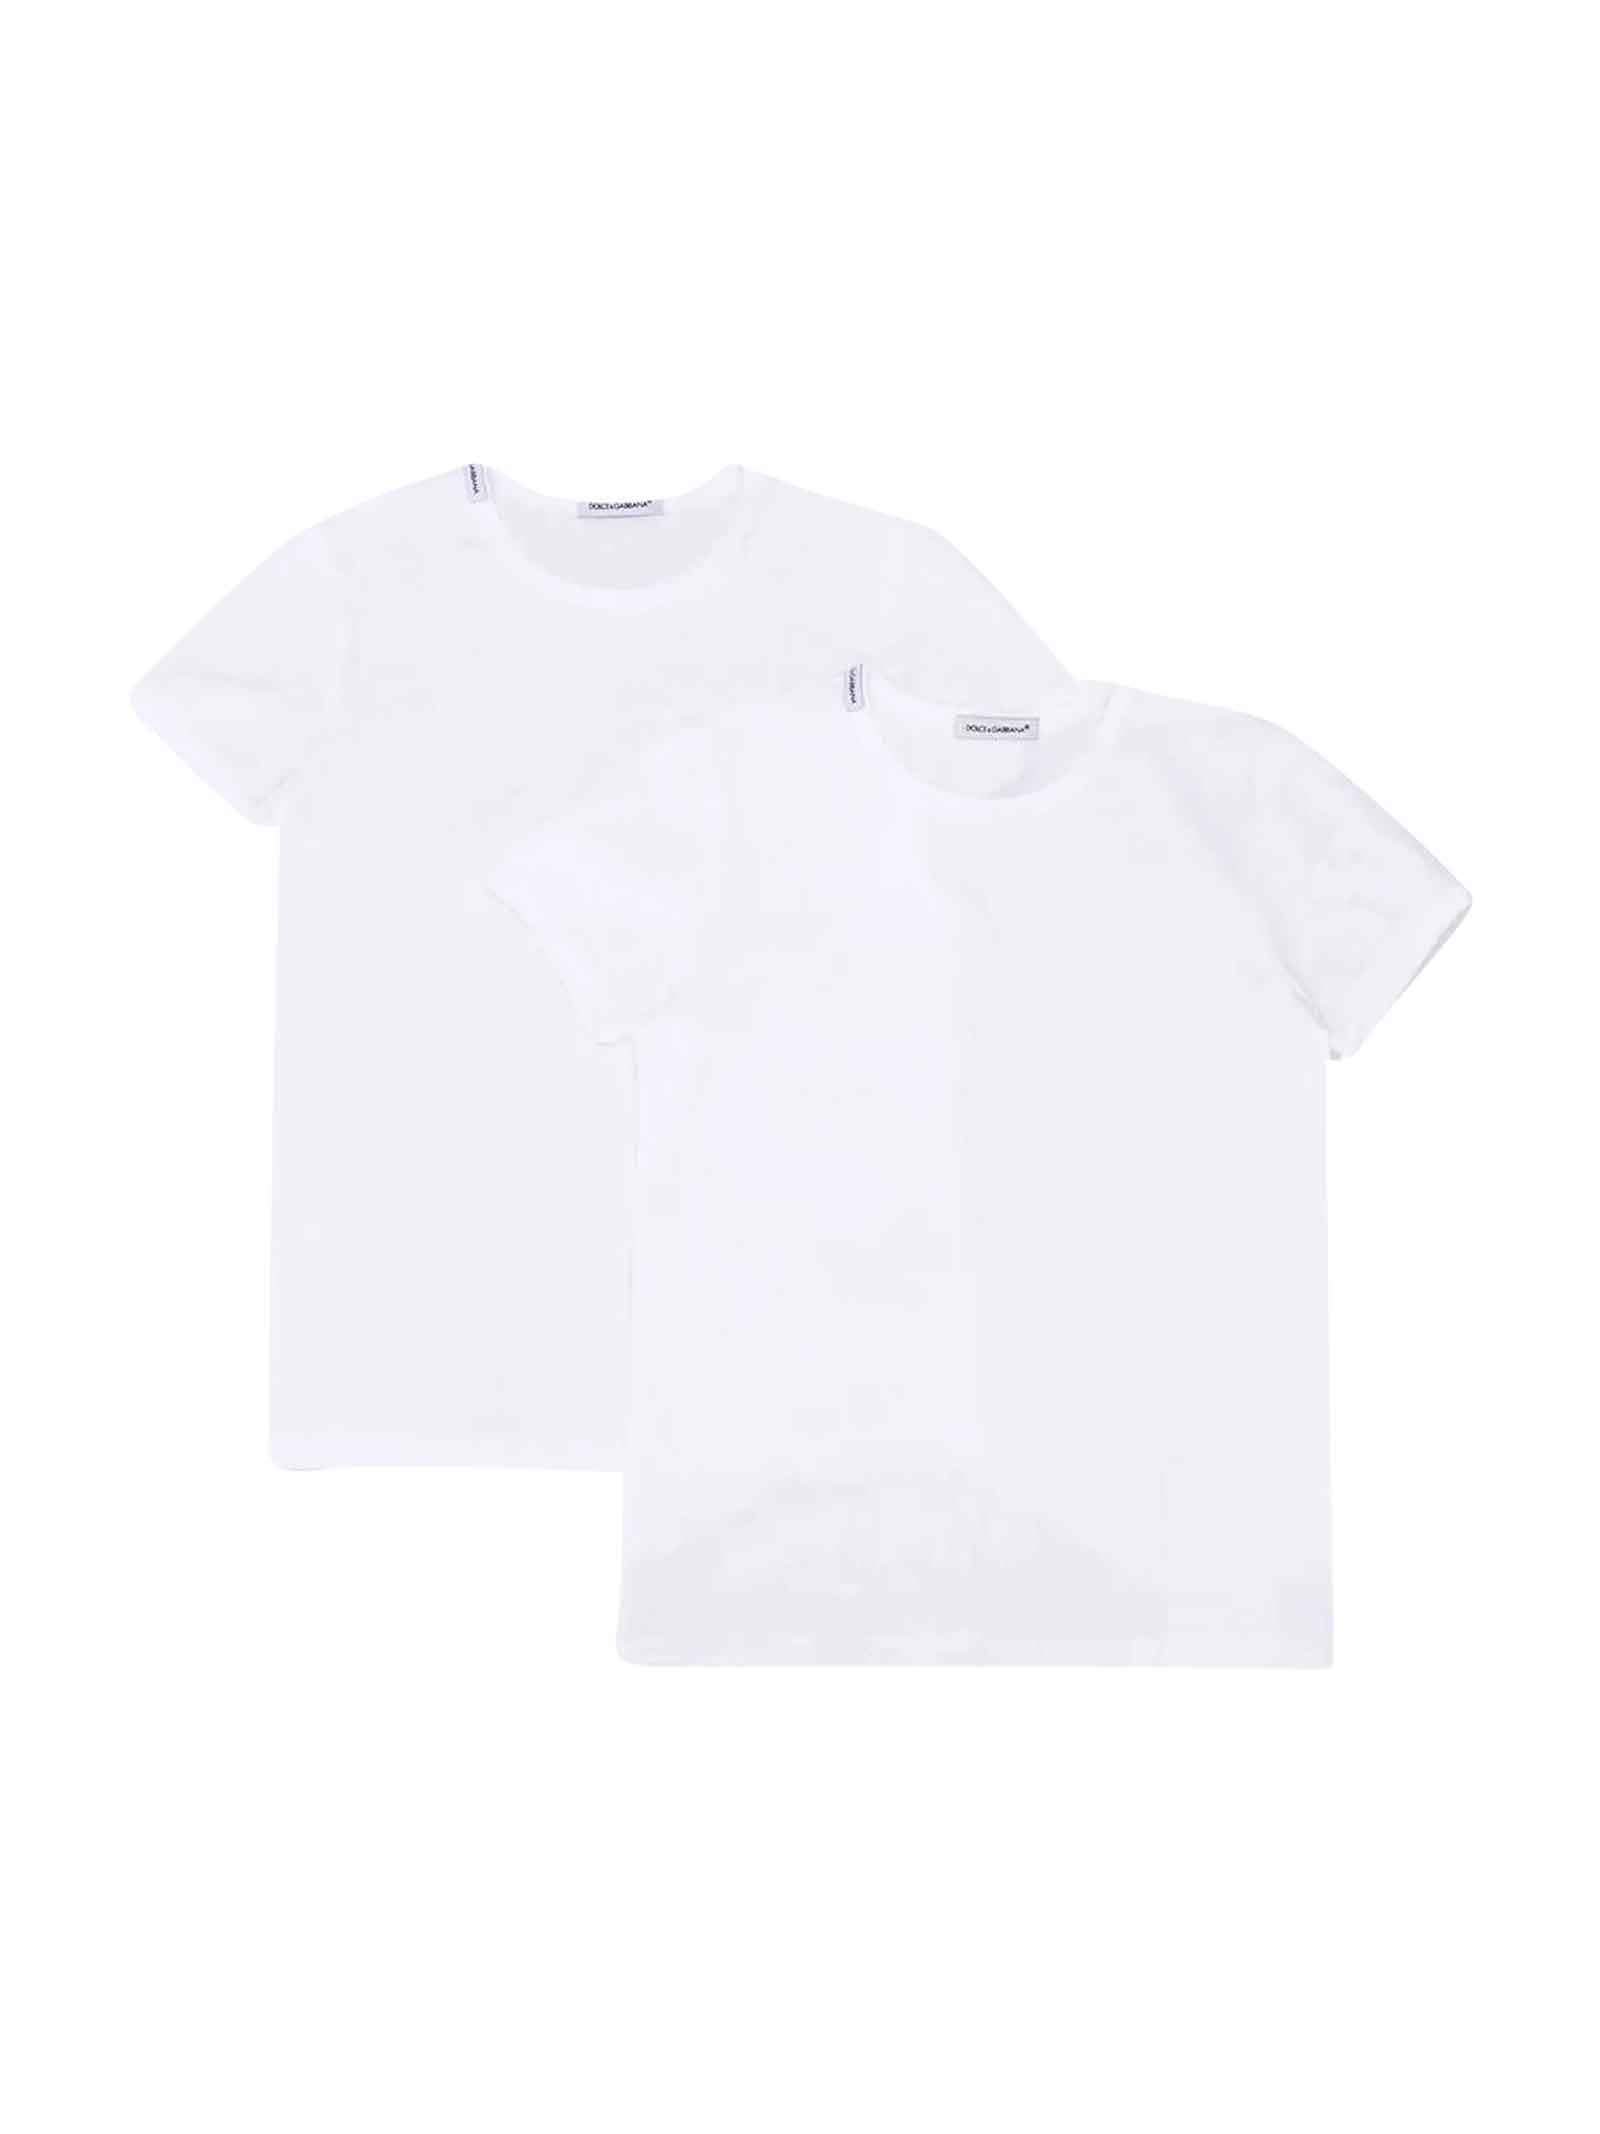 Dolce & Gabbana White T-shirt Boy